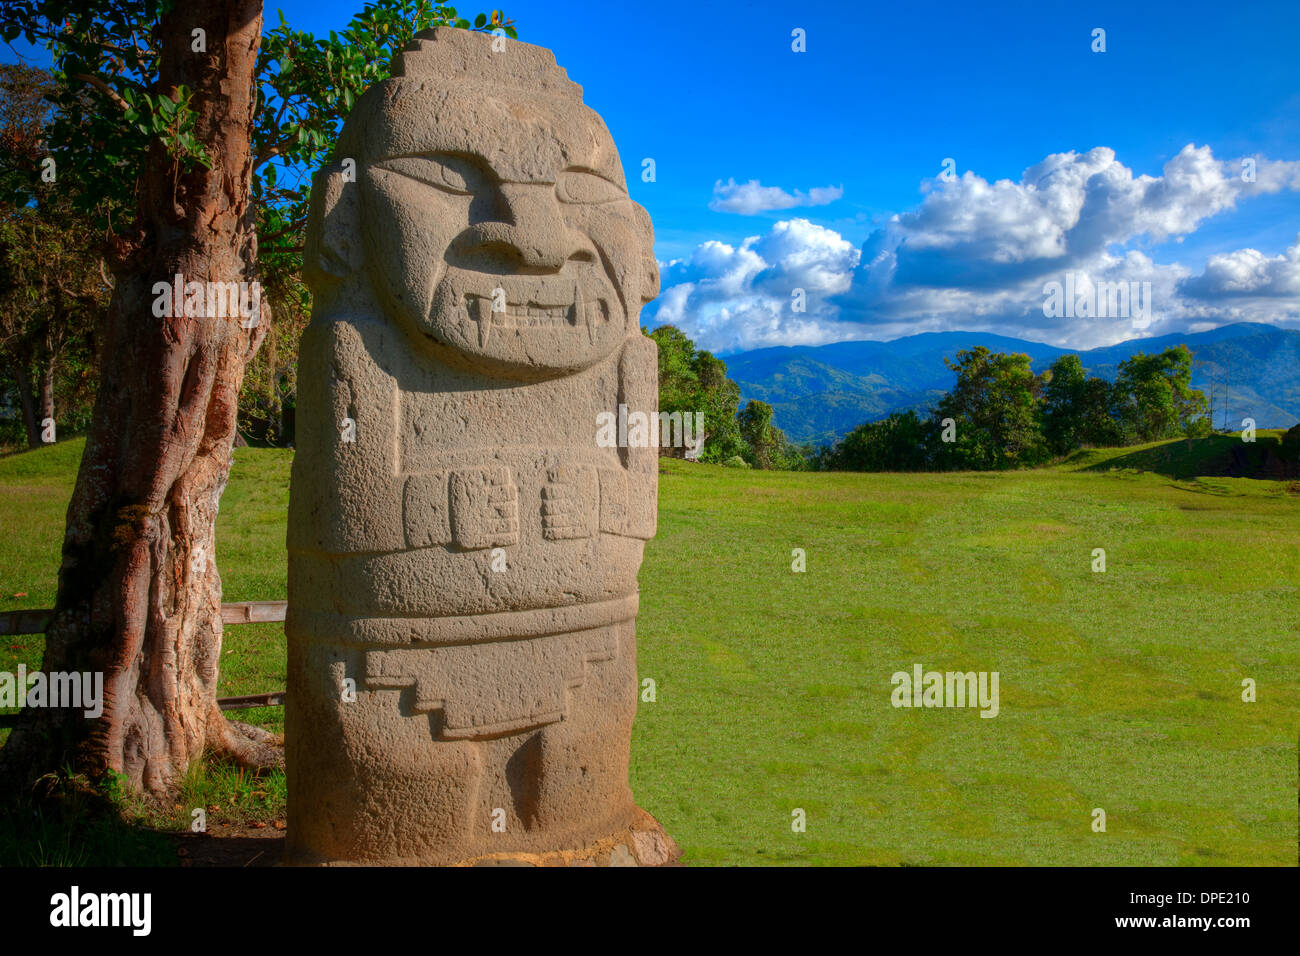 La antigua estatua y los Andes, el Parque Arqueológico de San Agustín en Colombia año 3000 estatuas de cultura desconocido Foto de stock